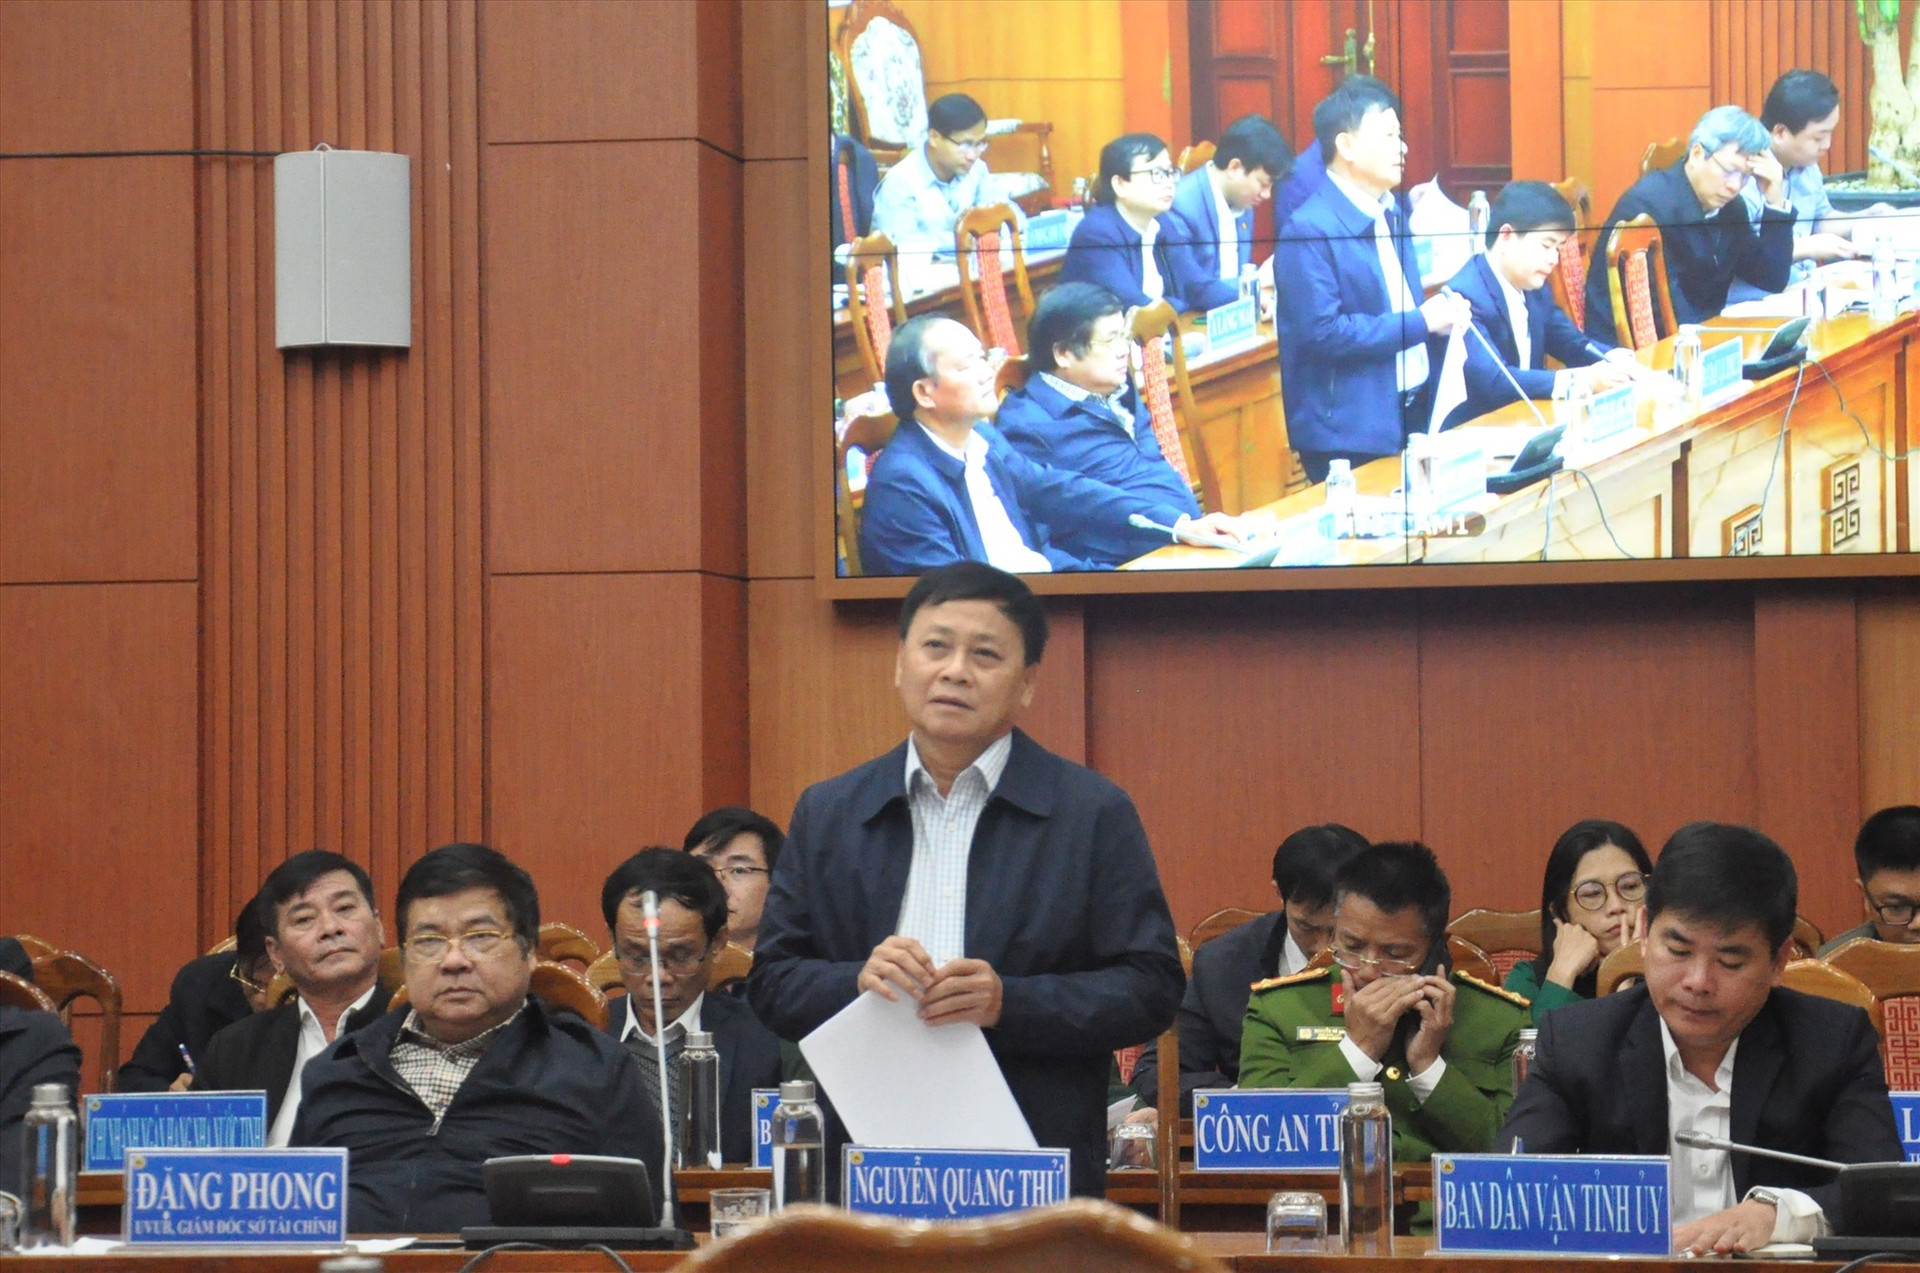 Giám đốc Sở Kế hoạch và Đầu tư Nguyễn Quang Thử phát biểu tại hội nghị. Ảnh: X.P